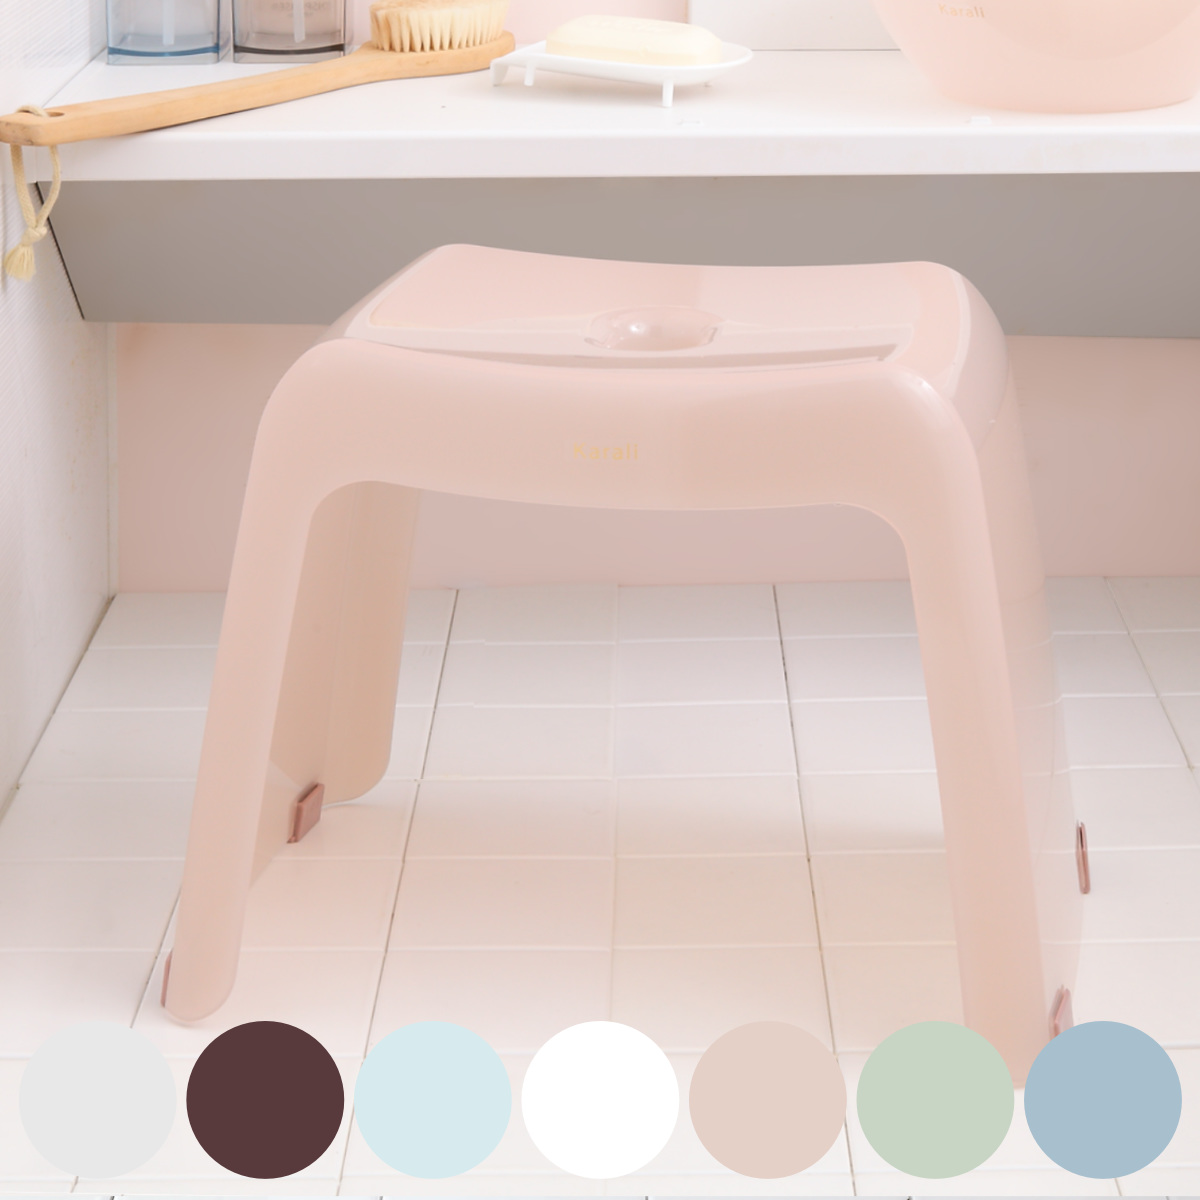 風呂椅子 カラリ karali 高さ30cm （ 風呂イス 風呂いす シャワーチェア バスチェア 腰かけ 30H 透明 くすみカラー 高さ 30cm 30 コの字